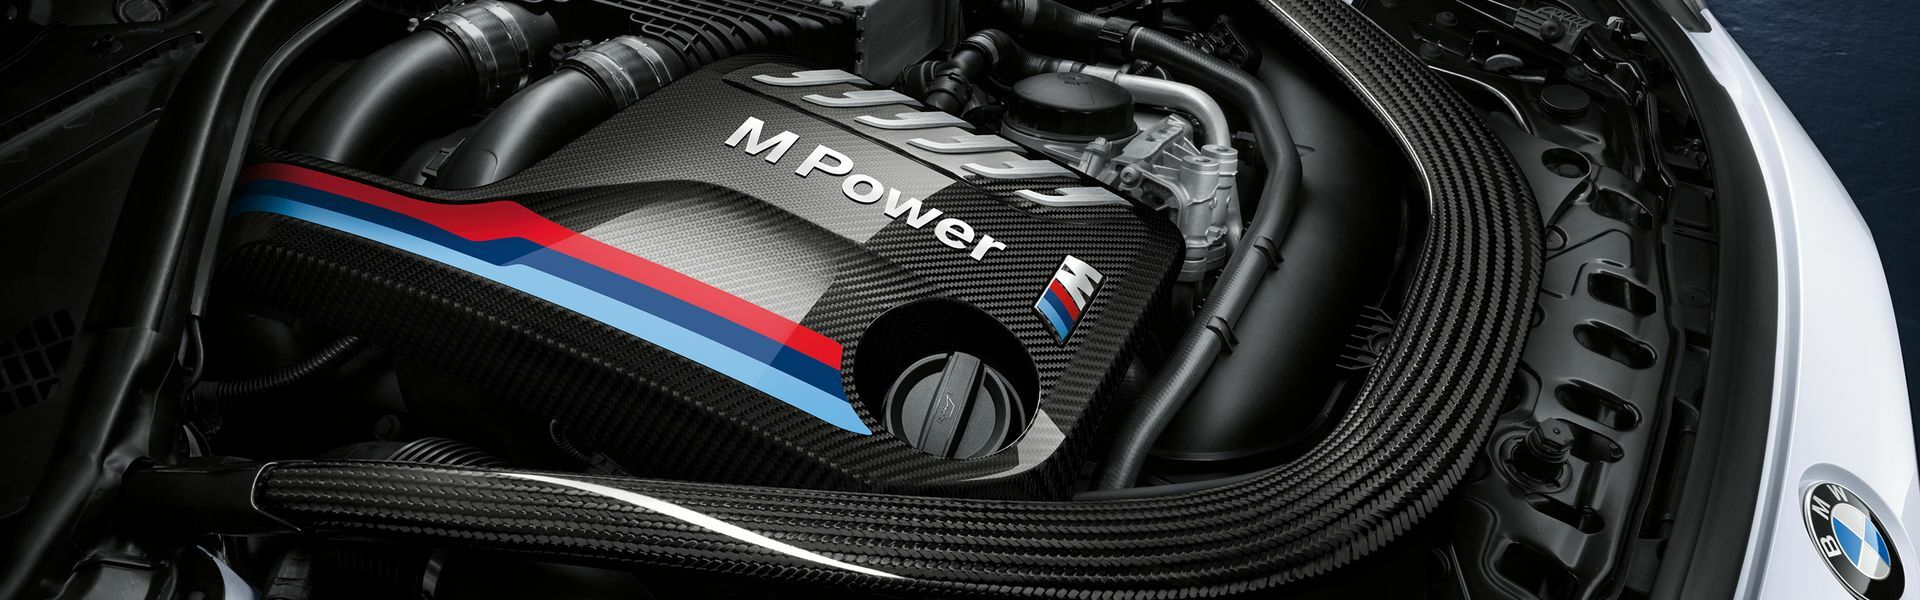 Zvýšení výkonu/ Softwarové úpravy/ Drobné performance díly pro automobil Porsche Panamera GTS 970